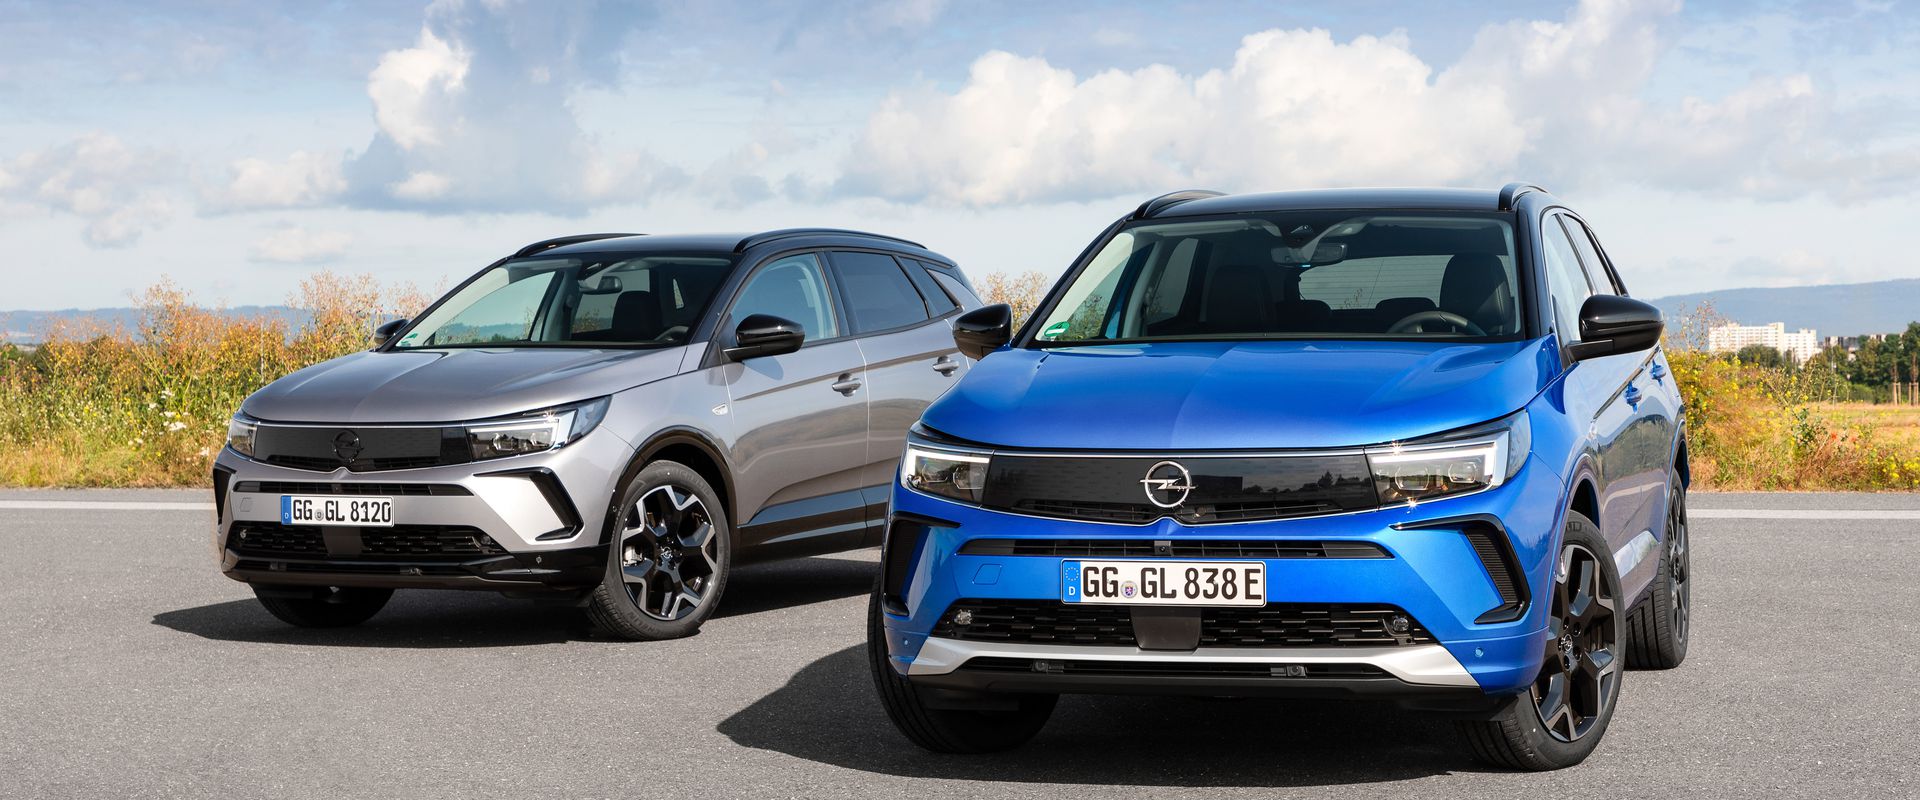 Új Opel Grandland: markáns megjelenés, high-tech megoldások, digitális Pure Panel műszerfal